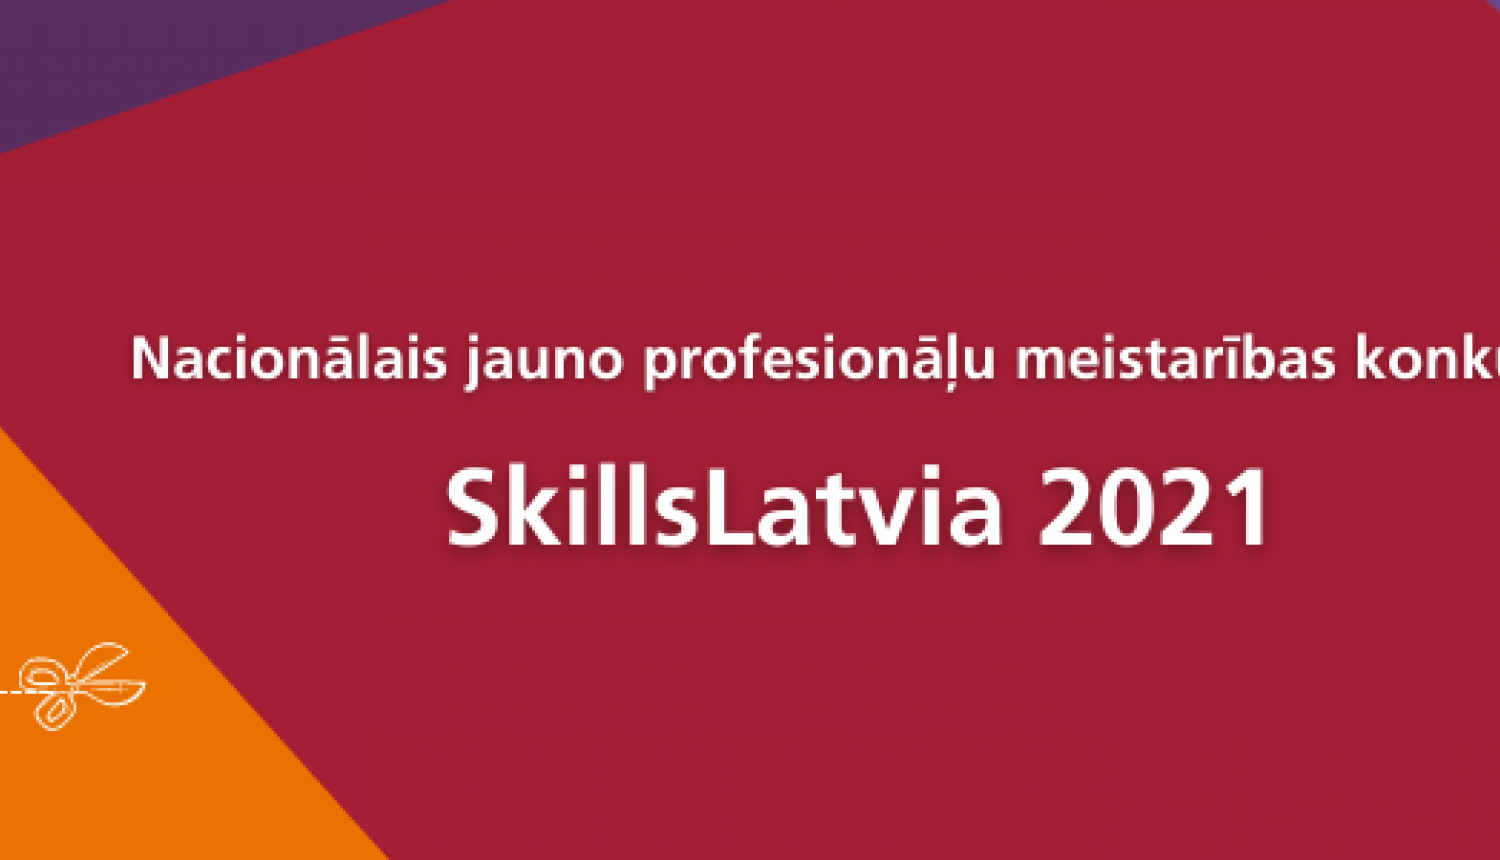 SkillsLatvia 2021